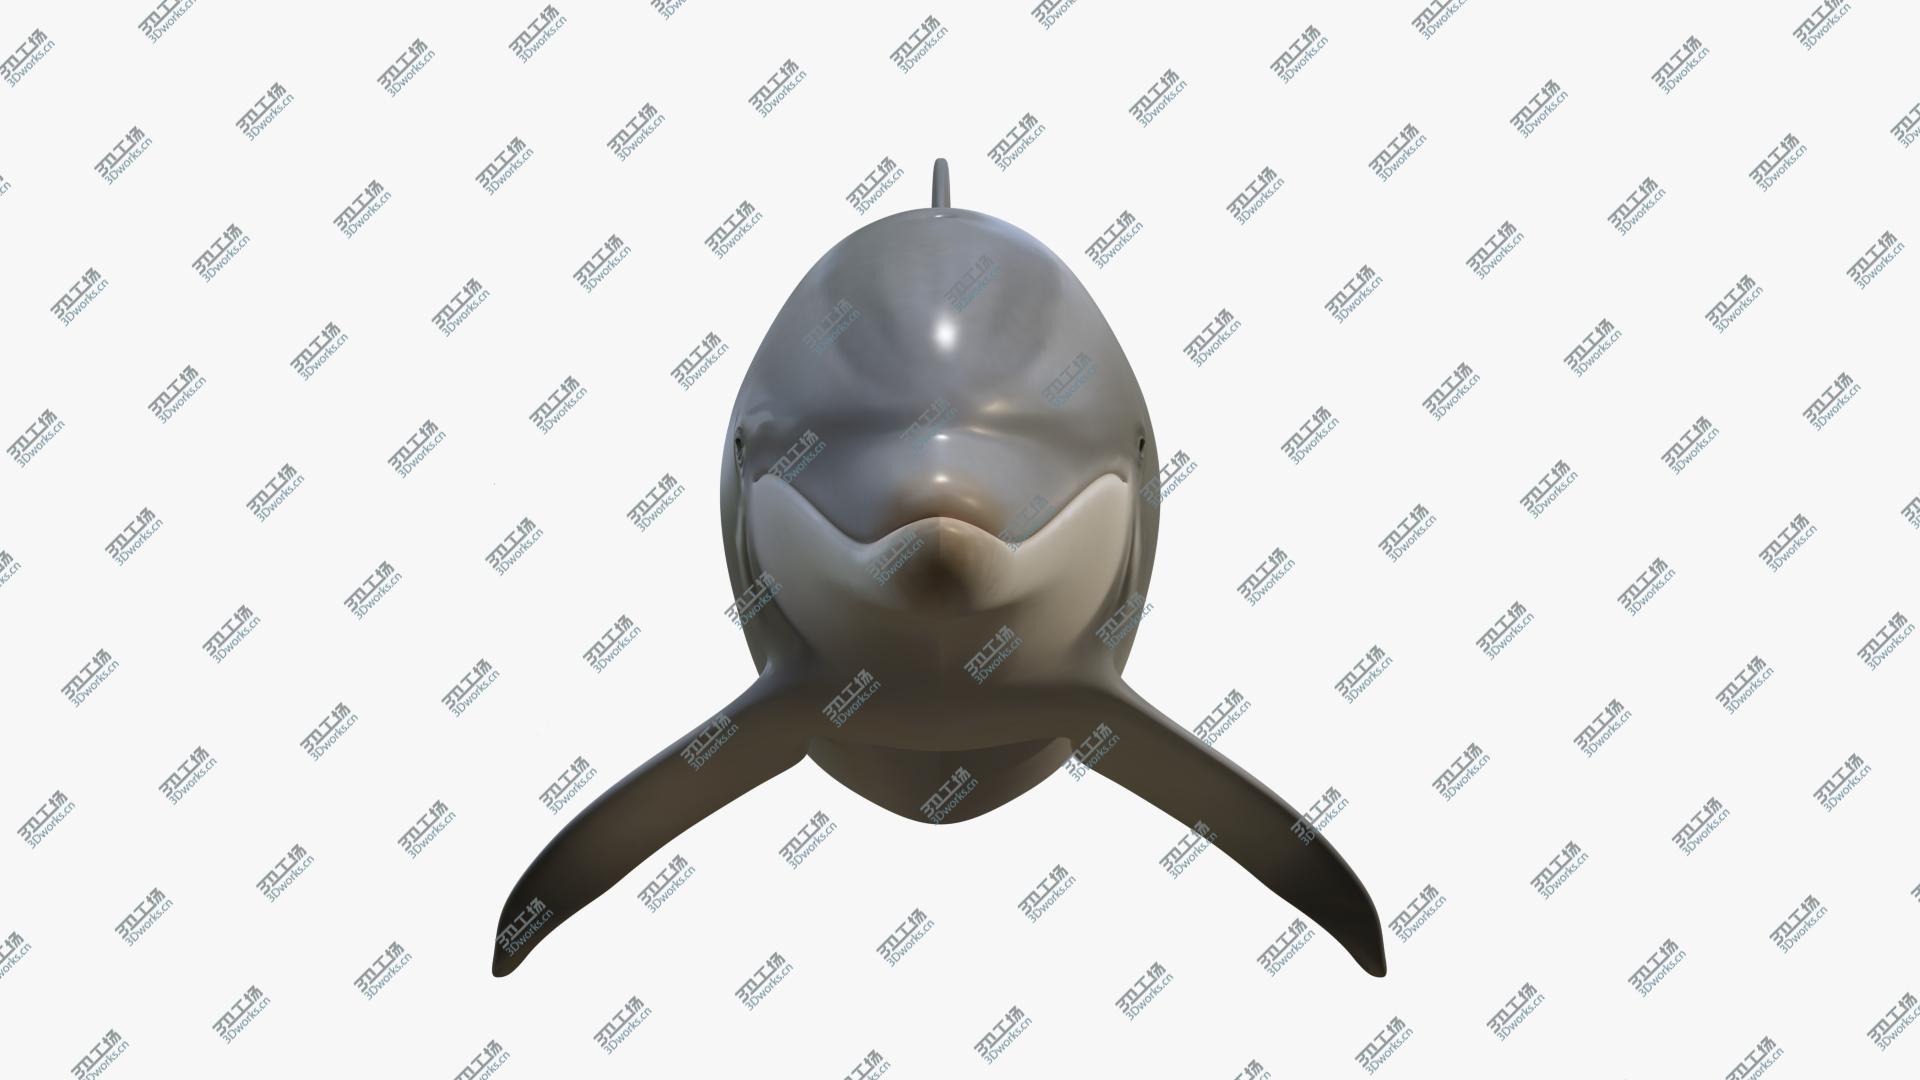 images/goods_img/202104021/3D Beautiful Common Bottlenose Dolphin model/3.jpg